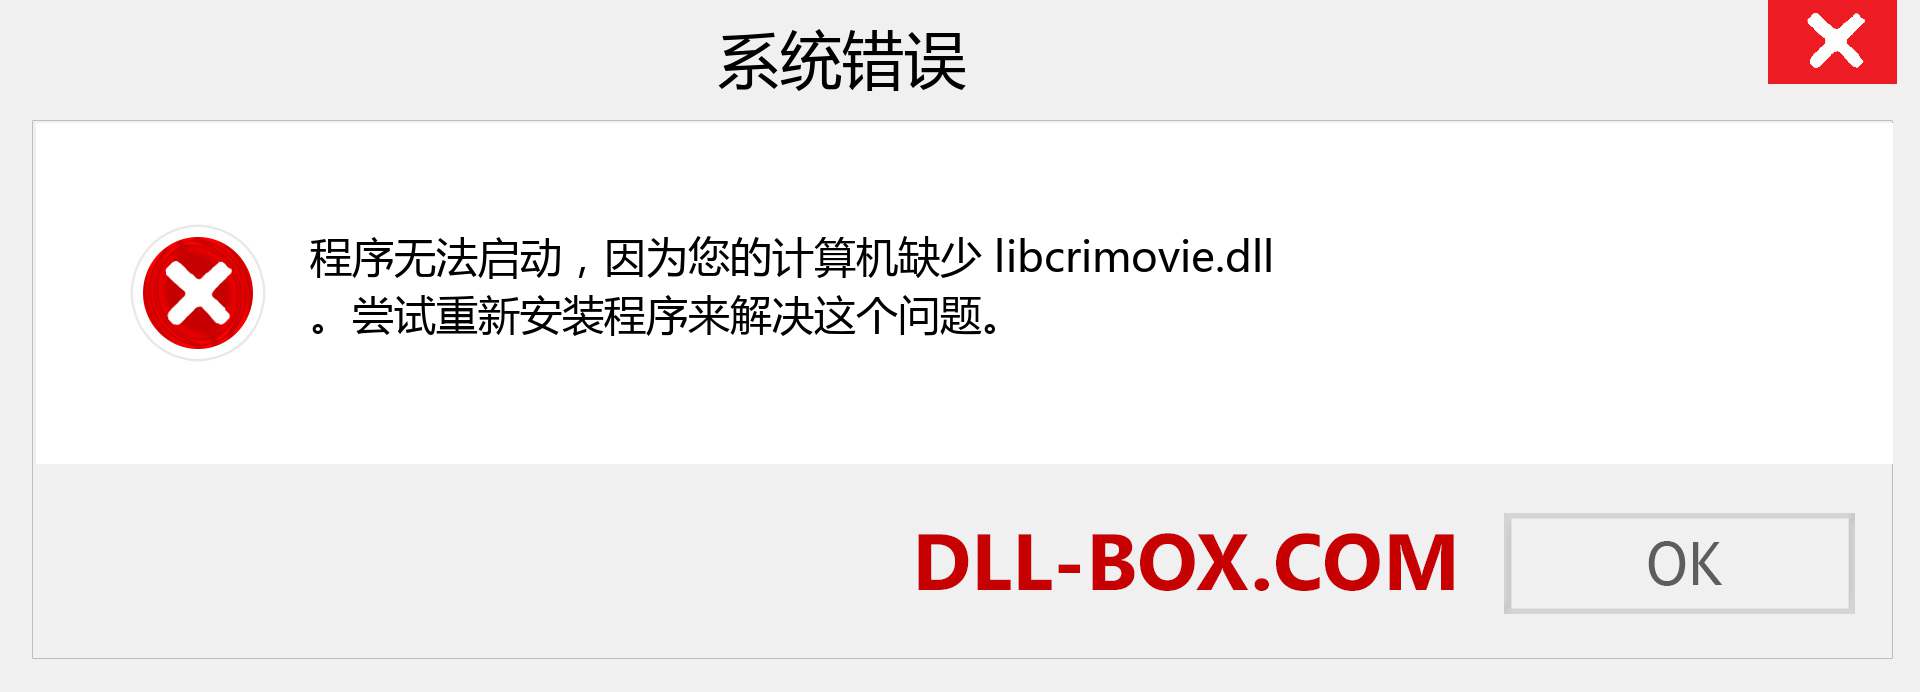 libcrimovie.dll 文件丢失？。 适用于 Windows 7、8、10 的下载 - 修复 Windows、照片、图像上的 libcrimovie dll 丢失错误